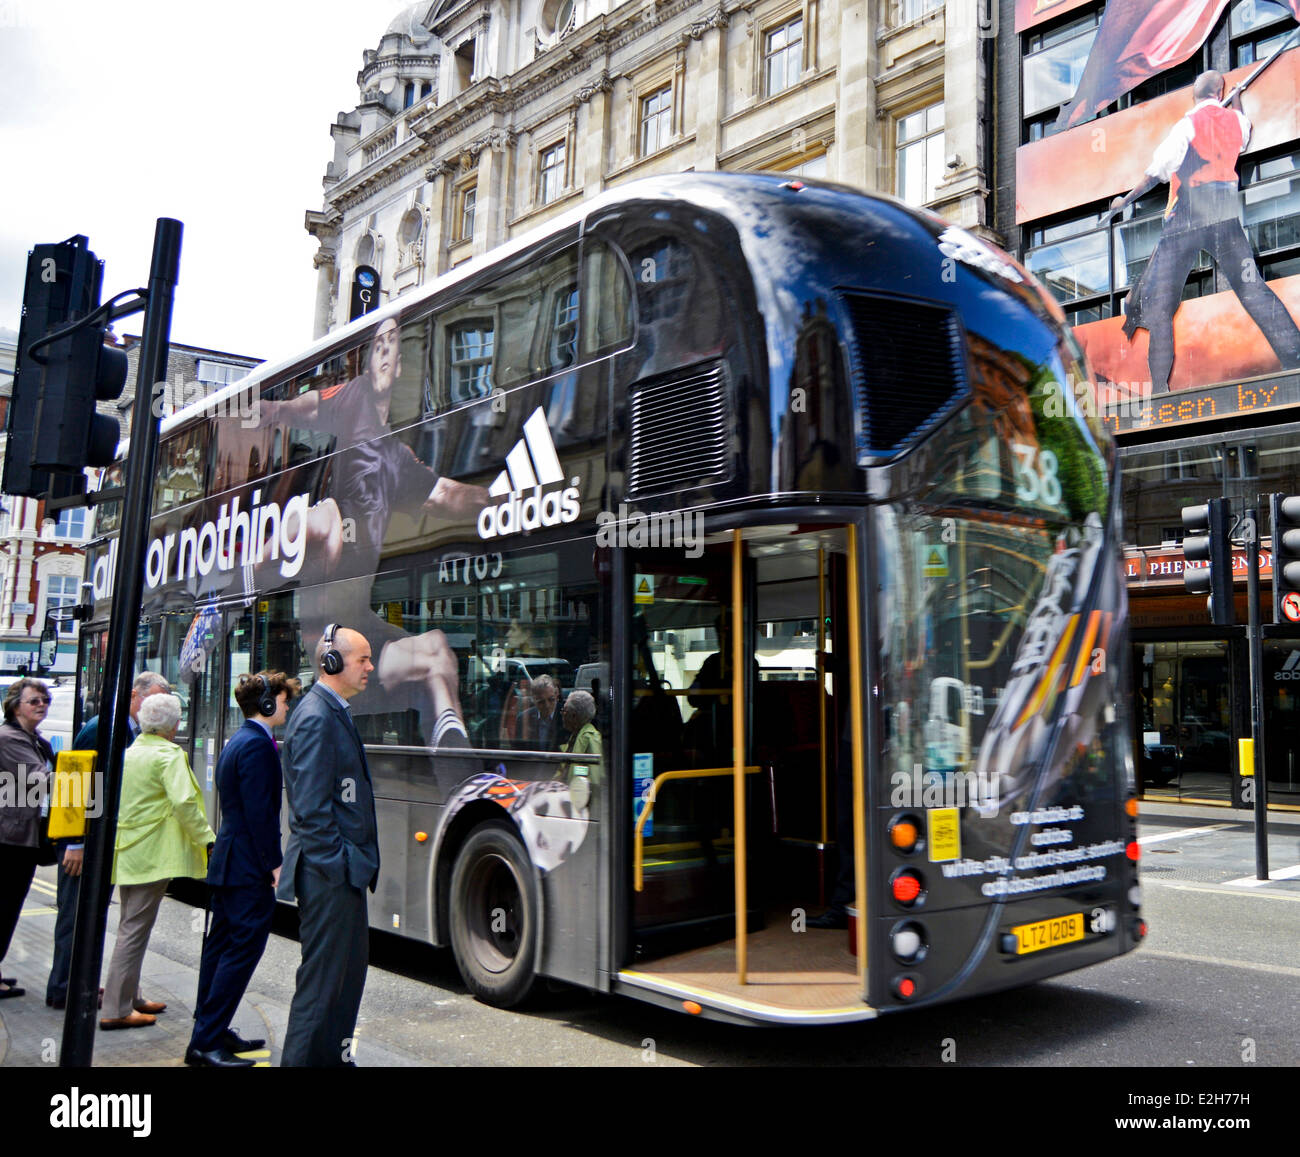 Adidas Werbung auf die neue Routemaster Bus im Zentrum von London, England,  Vereinigtes Königreich Stockfotografie - Alamy